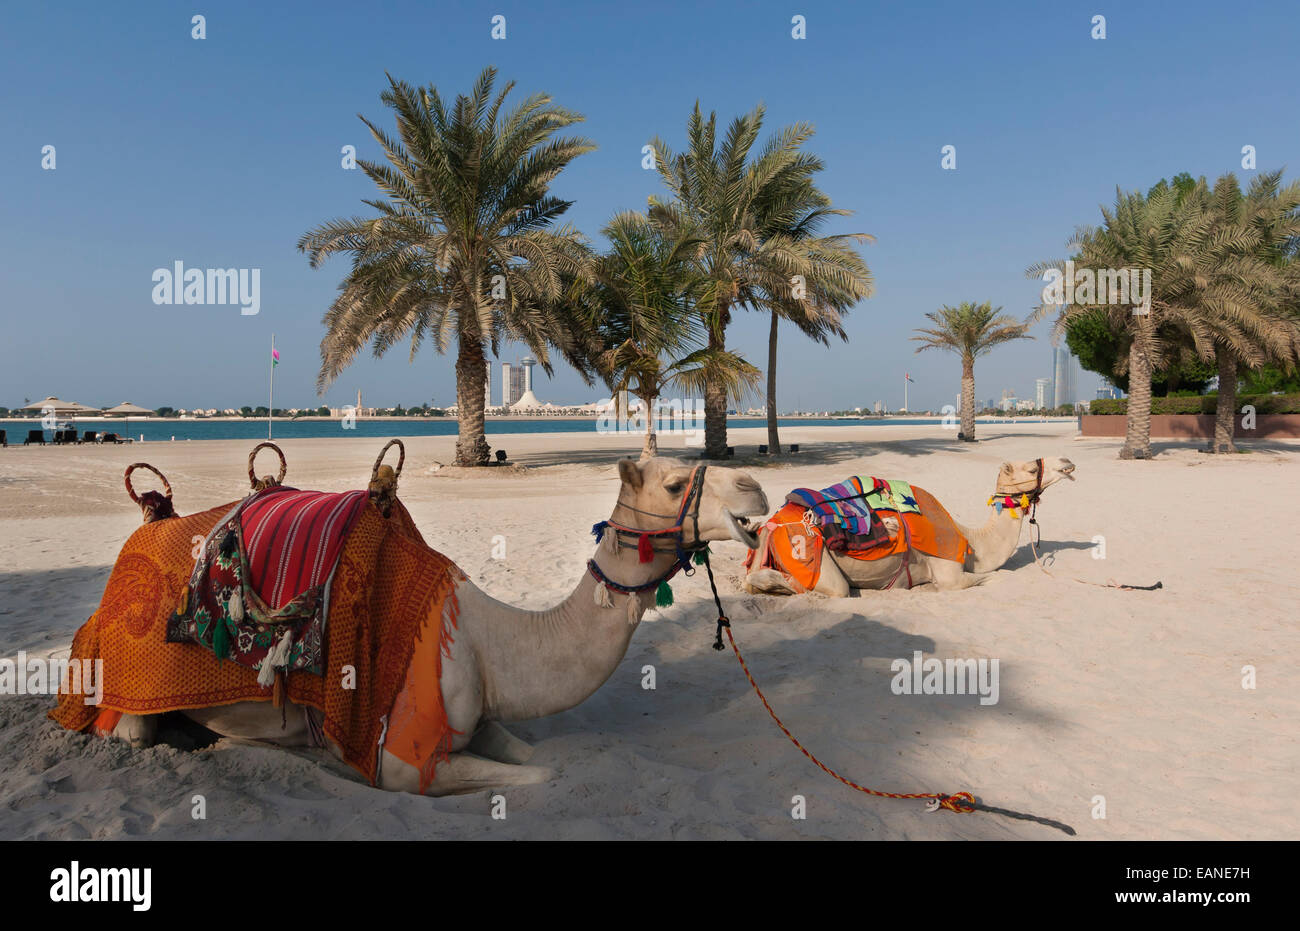 Abu Dhabi, Emirats Arabes Unis. Chameaux sur la plage. Banque D'Images